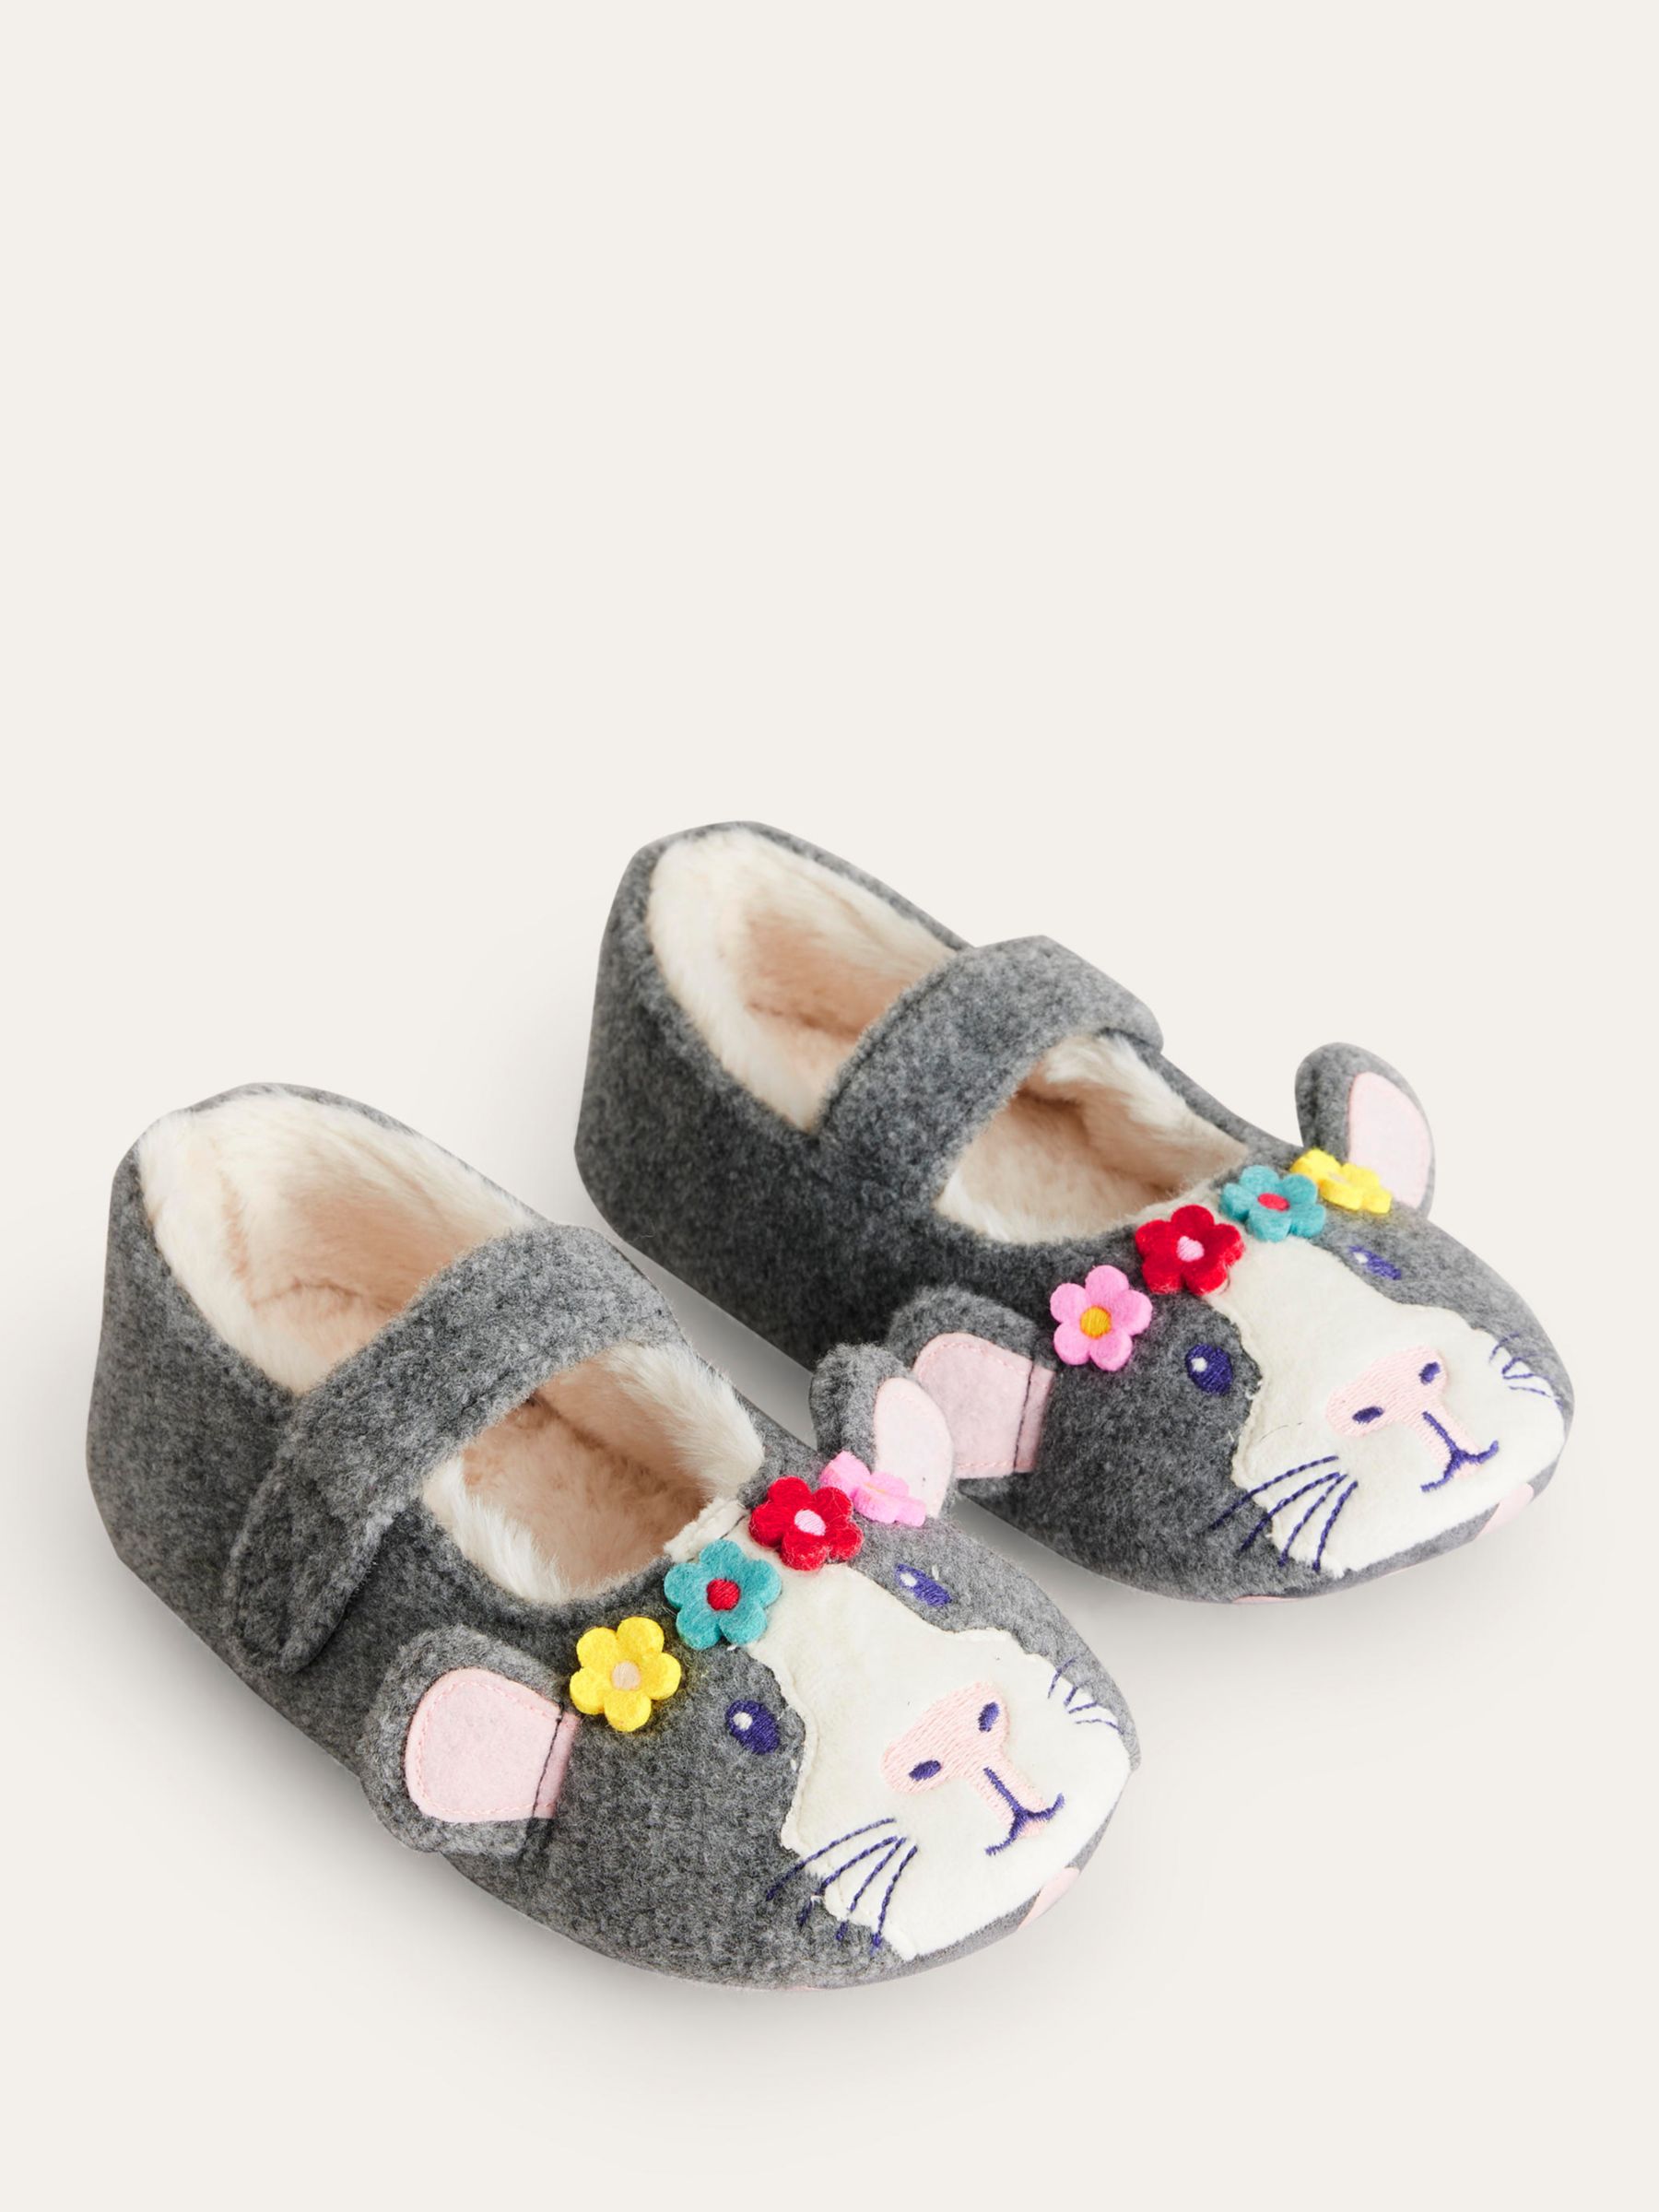 Mini Boden Kids' Novelty Guinea Pig Slippers, Grey/Multi at John Lewis ...